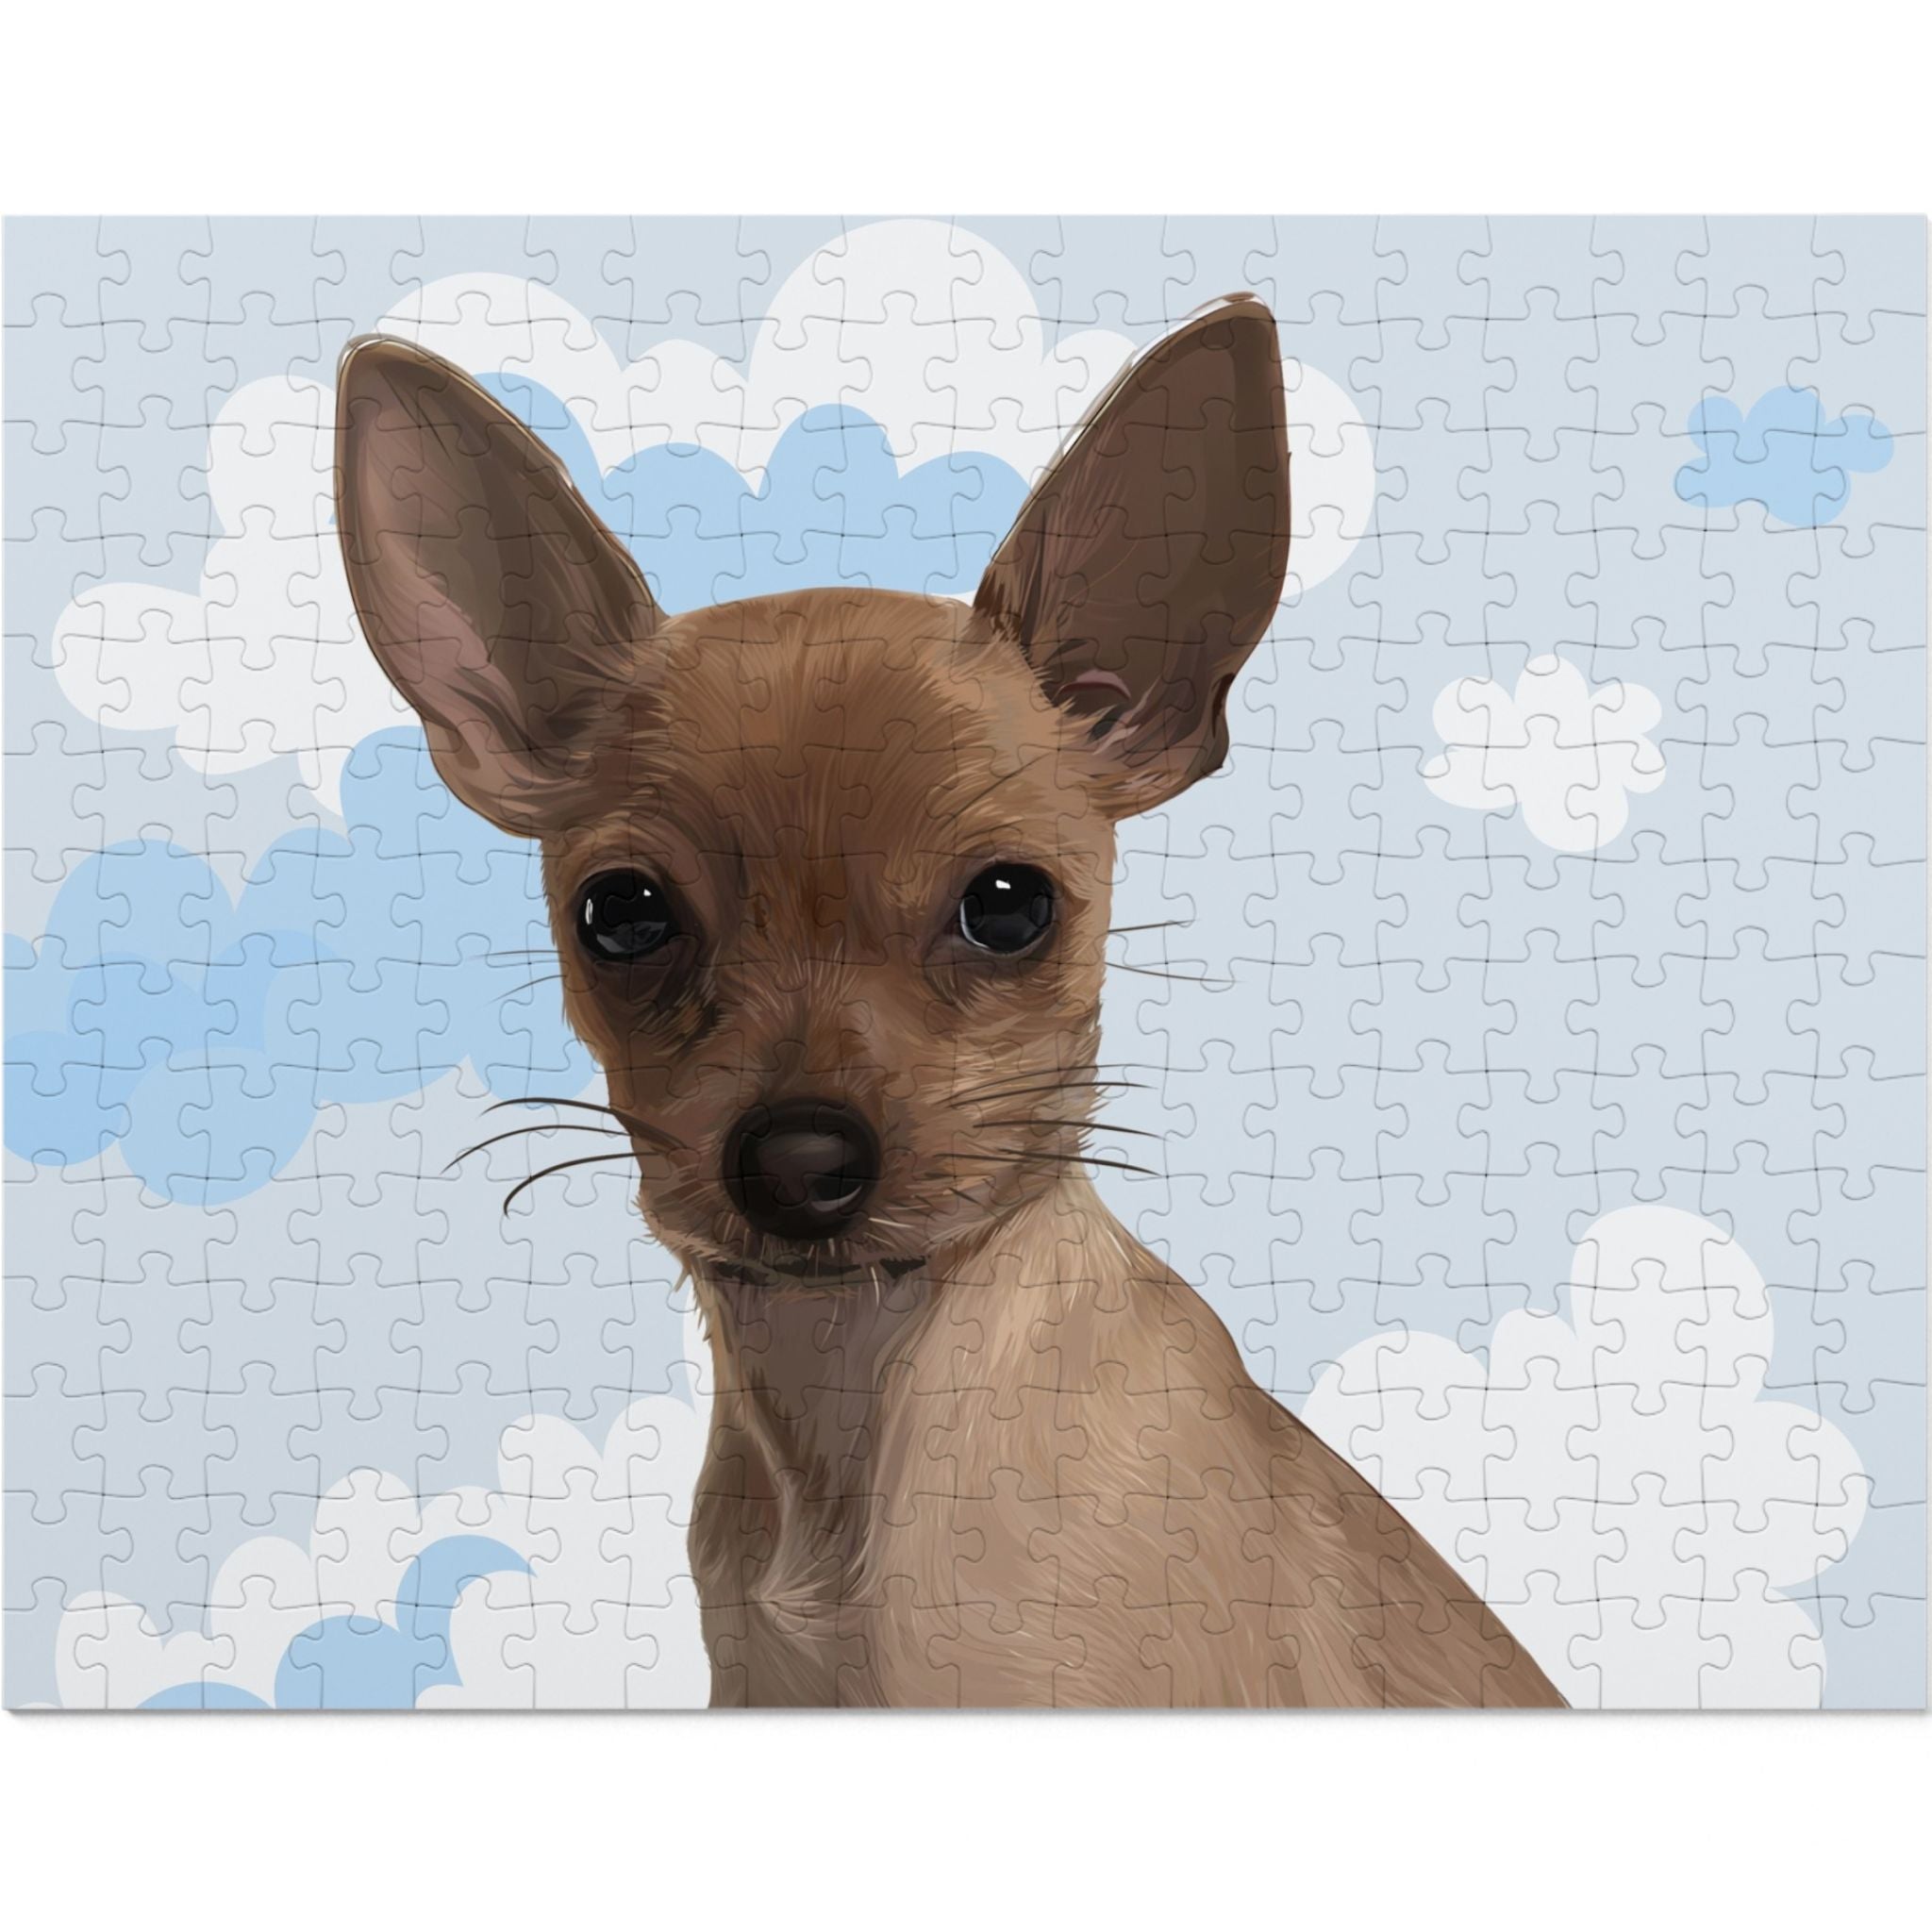 Dog Portrait Jigsaw Puzzle (30, 110, 252, 500,1000-Piece) | Cloudy Day - custom-dog-portrait-jigsaw-puzzle-30-110-252-500-1000-cloudy-day